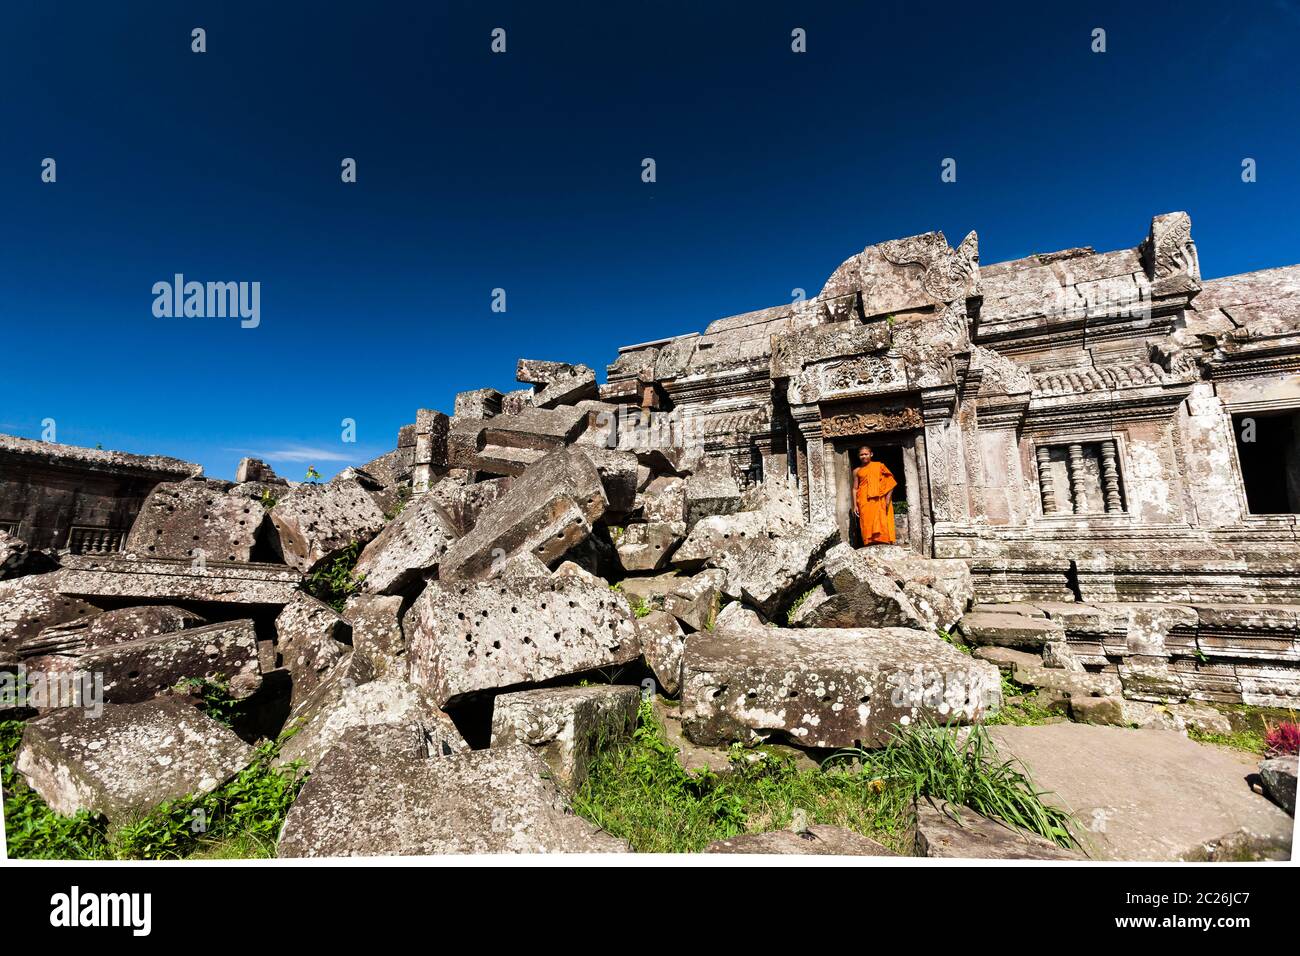 Tempio di Preah Vihear, rovine e tempio principale, edificio principale, santuario principale, tempio indù dell'antico Impero Khmer, Cambogia, Asia sudorientale, Asia Foto Stock